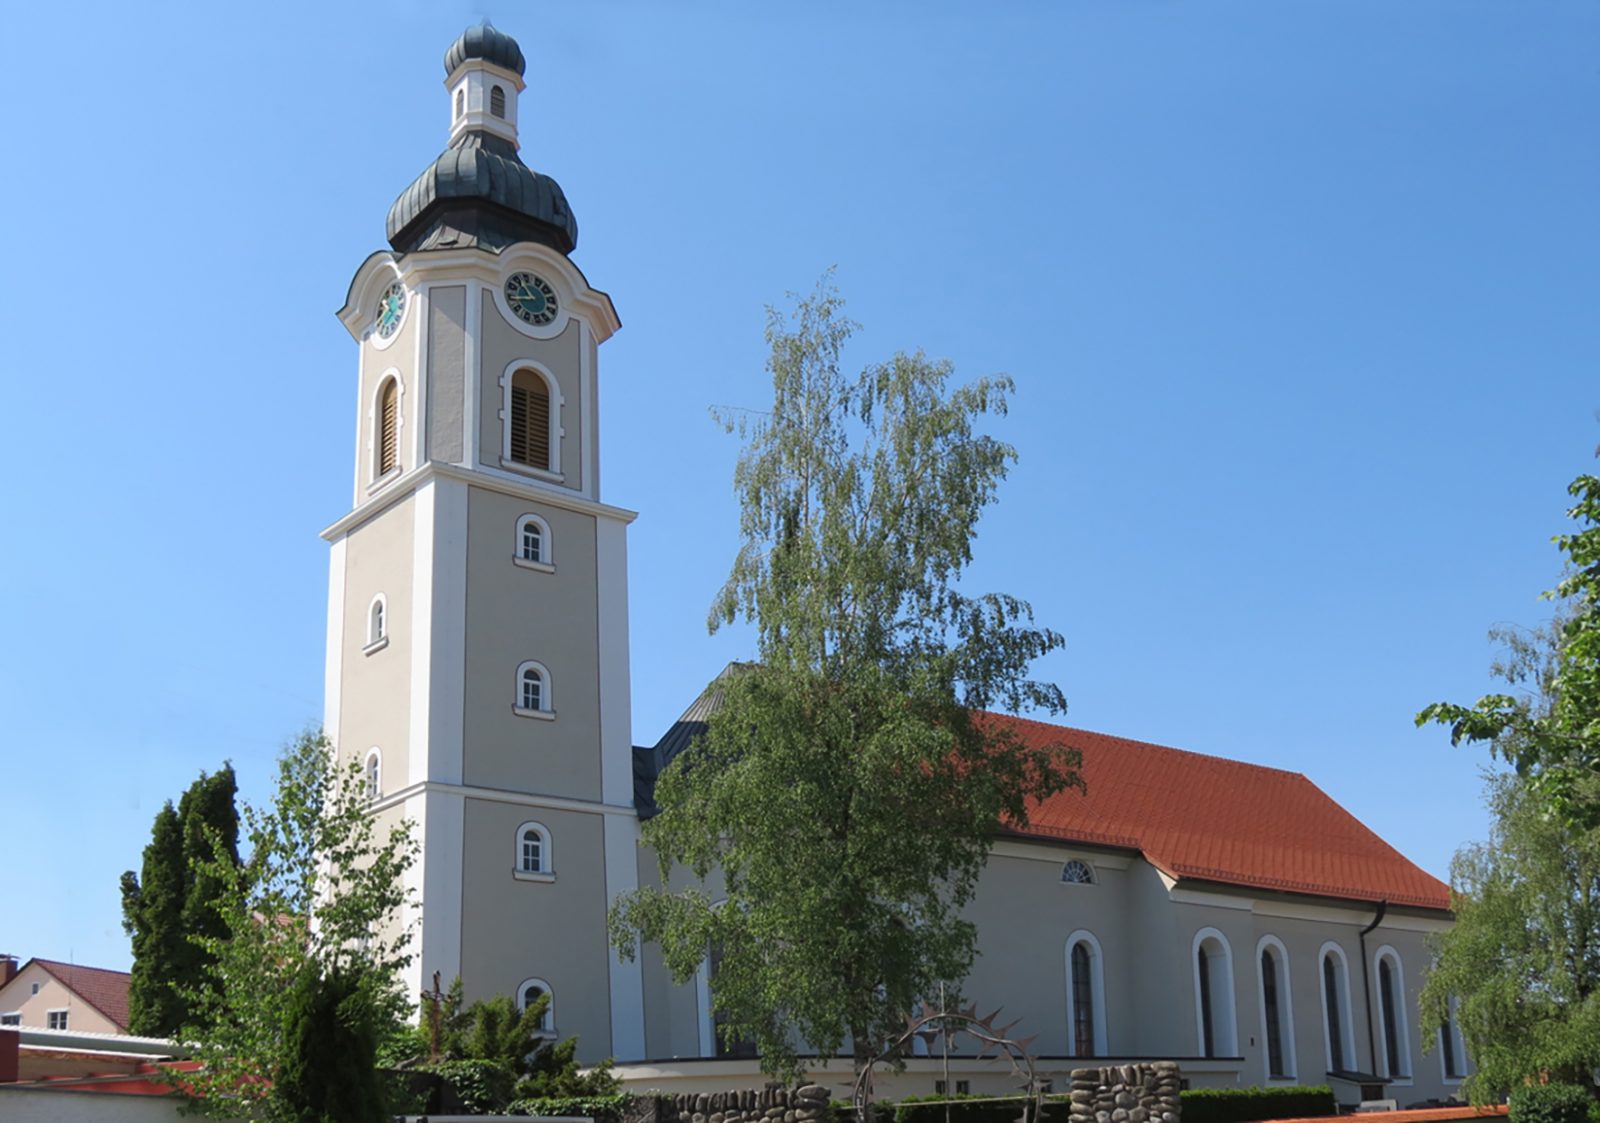 Kath. Pfarrkirche St. Gallus in Scheidegg